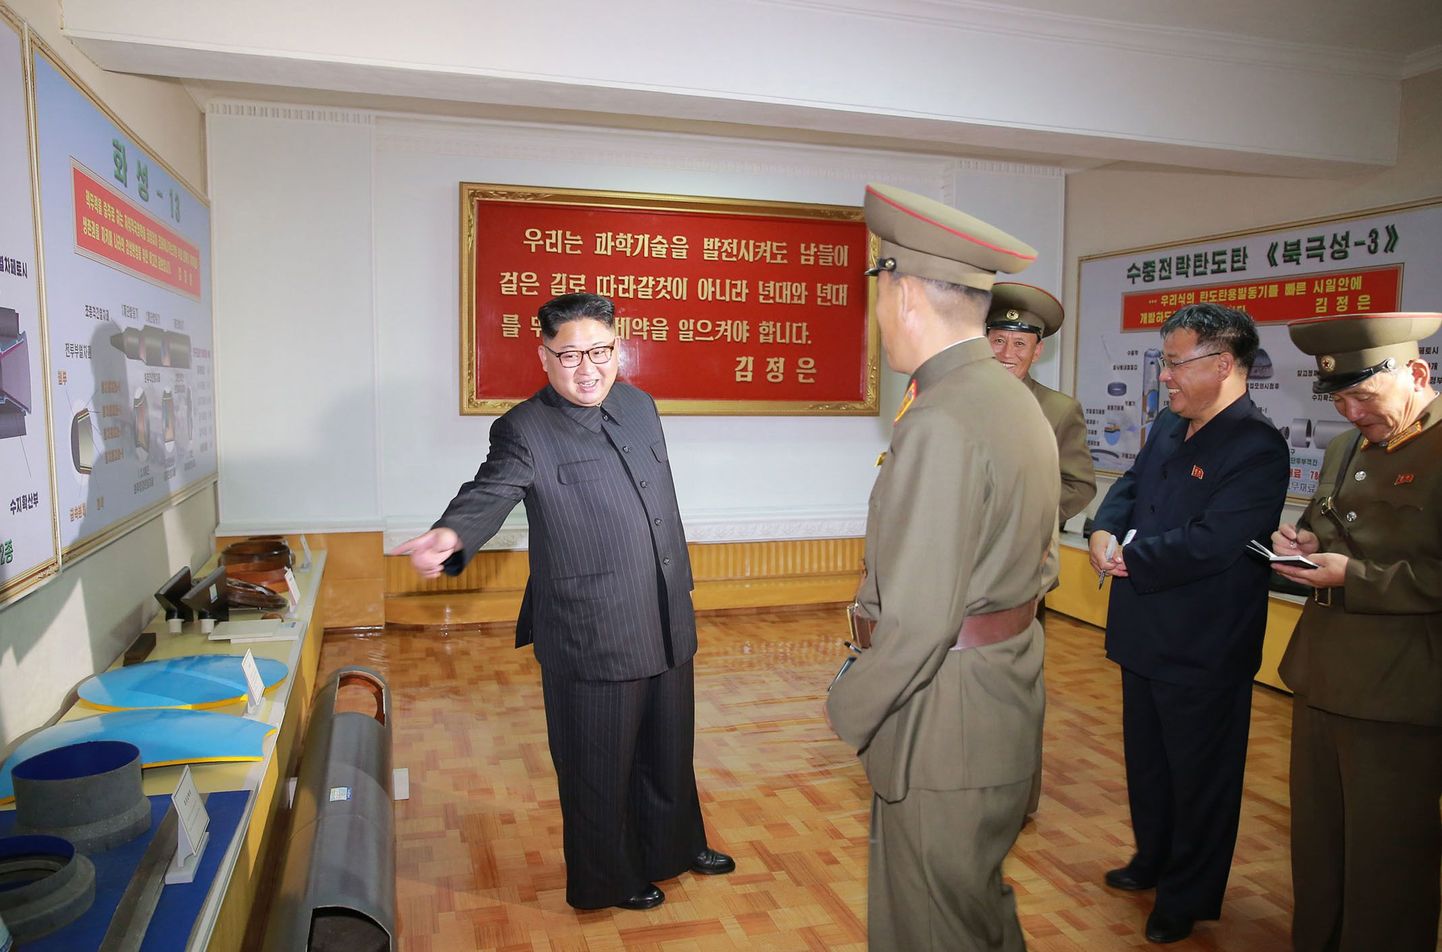 Kim Jong Un külastamas tahkel kütusel töötavate raketimootorite tehast. Kimist vasakul ja paremal on uute rakettide diagrammid.